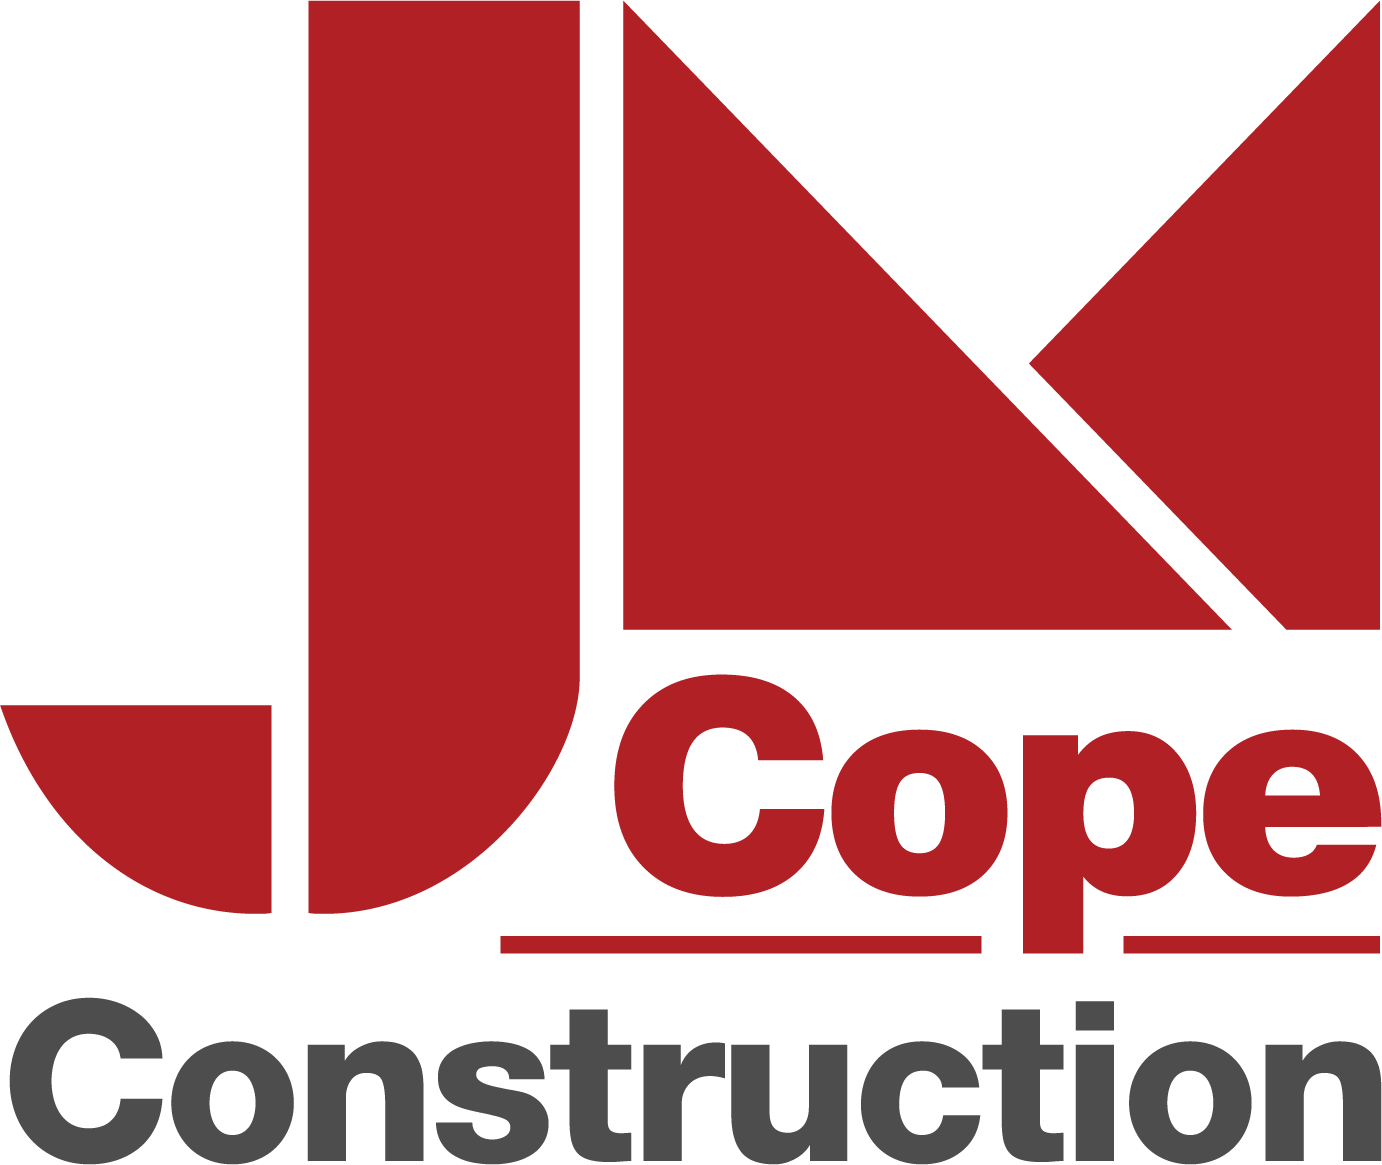 jm-cope-construction_large.png